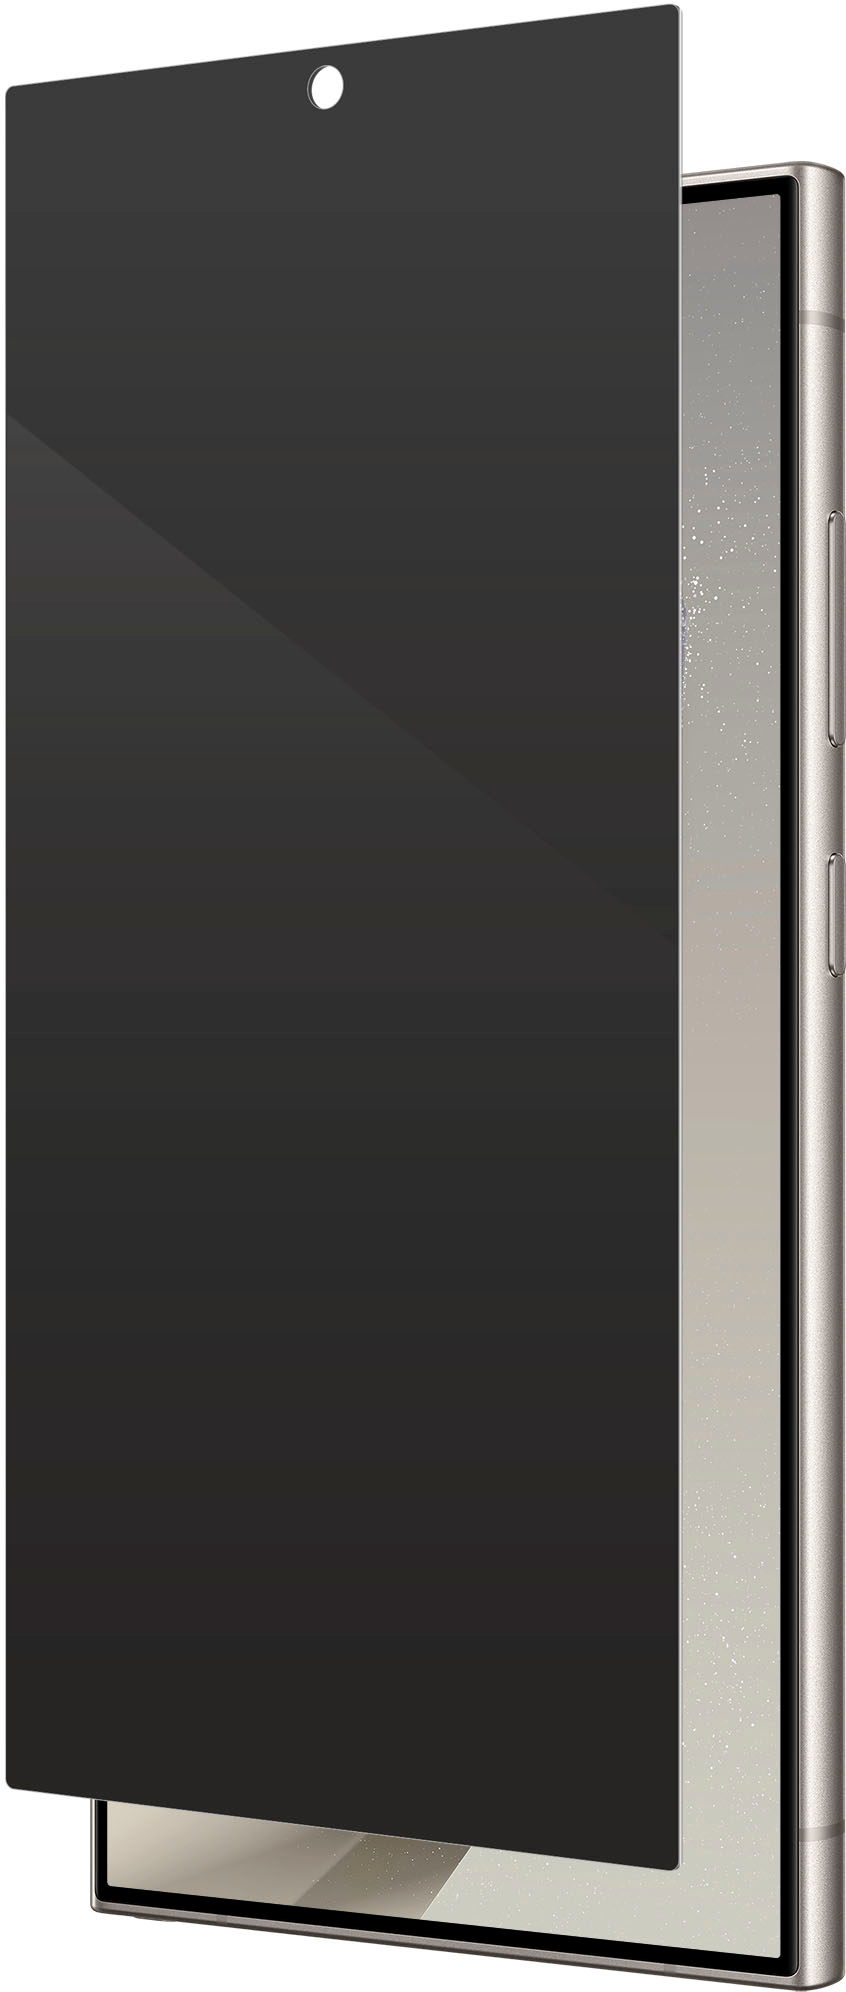 Protector de pantalla ZAGG Privacy para Samsung Galaxy S24 Ultra